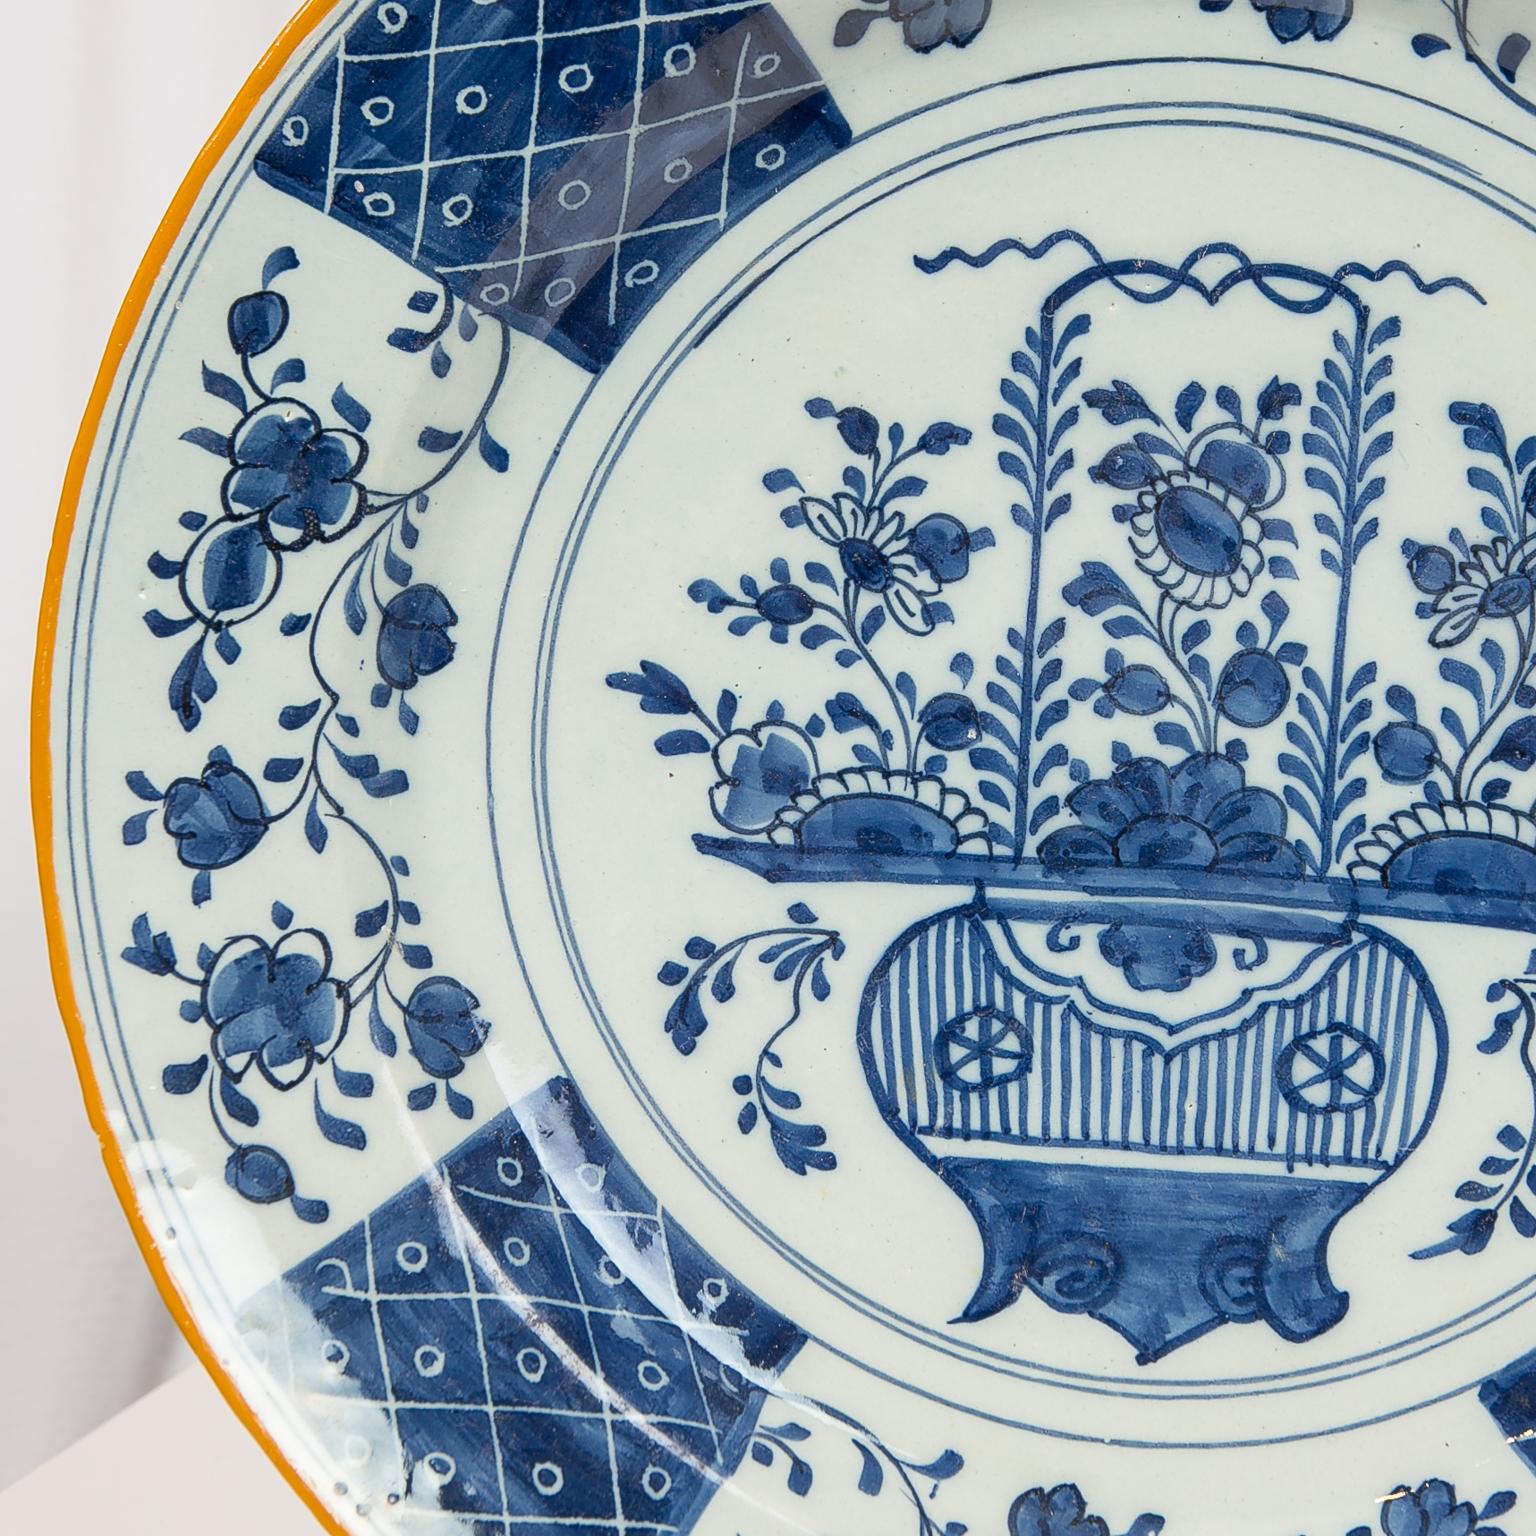 Wir freuen uns, dieses Paar holländischer blau-weißer Delft-Teller anbieten zu können, die in der Mitte eine zarte Vase mit Chrysanthemen und Pfingstrosen zeigen. 
Das Design in der Mitte des Ladegeräts ist von der chinesischen Dekoration